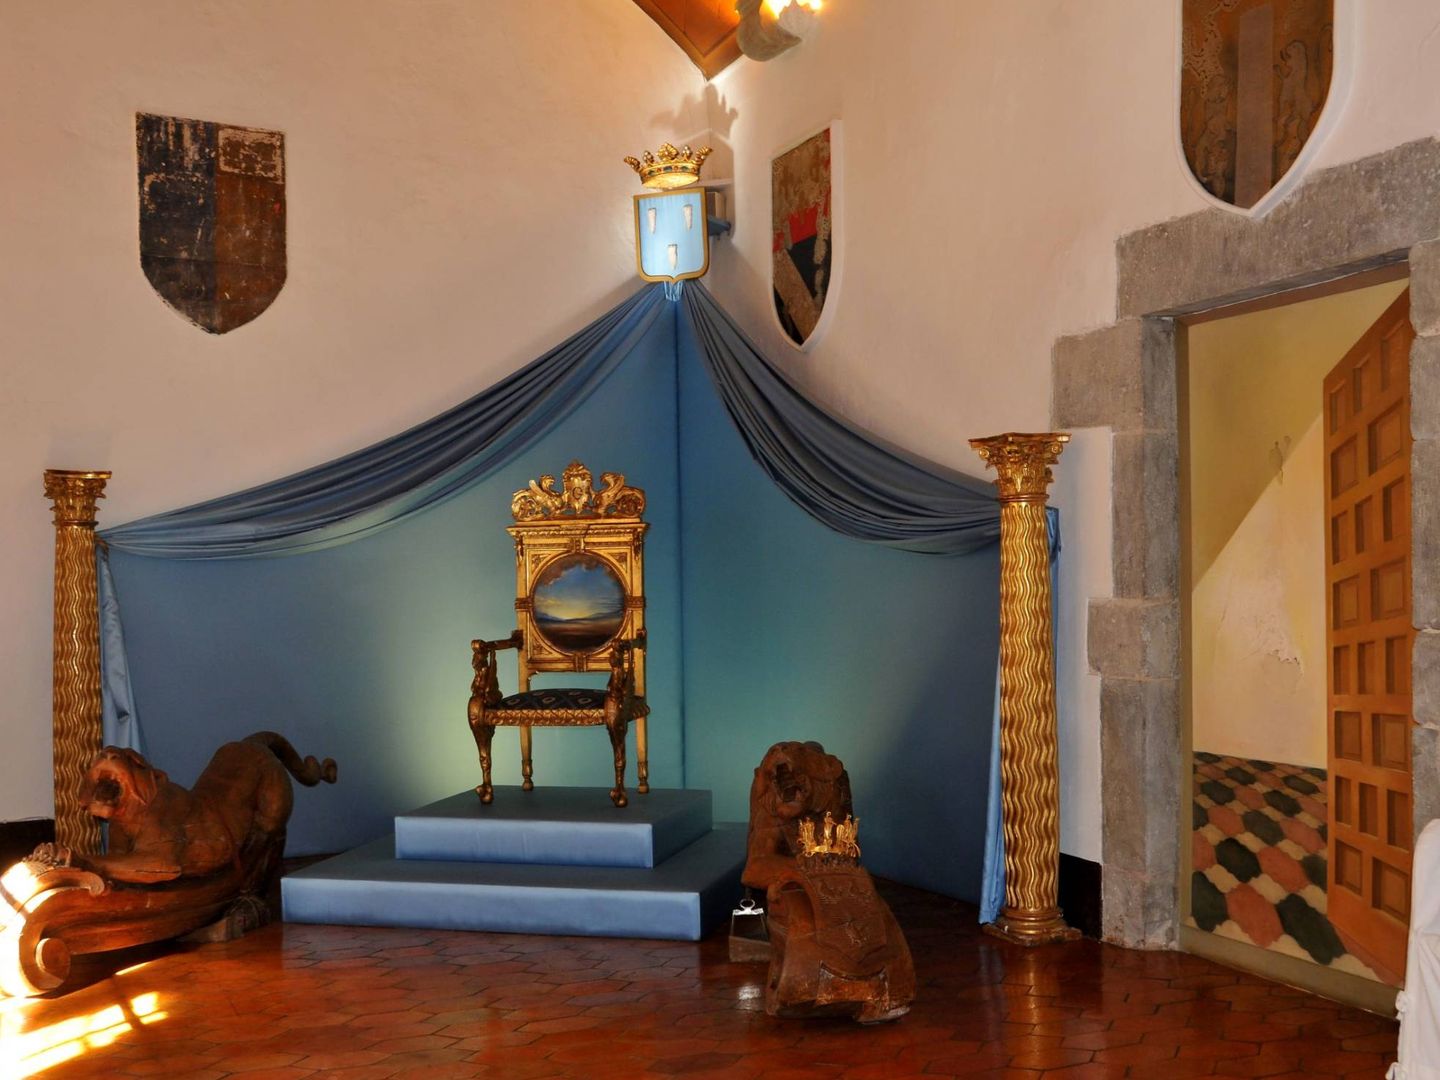 El salón del trono del Castillo Gala Dalí, muy daliniano. (Cortesía Fundación Dalí)